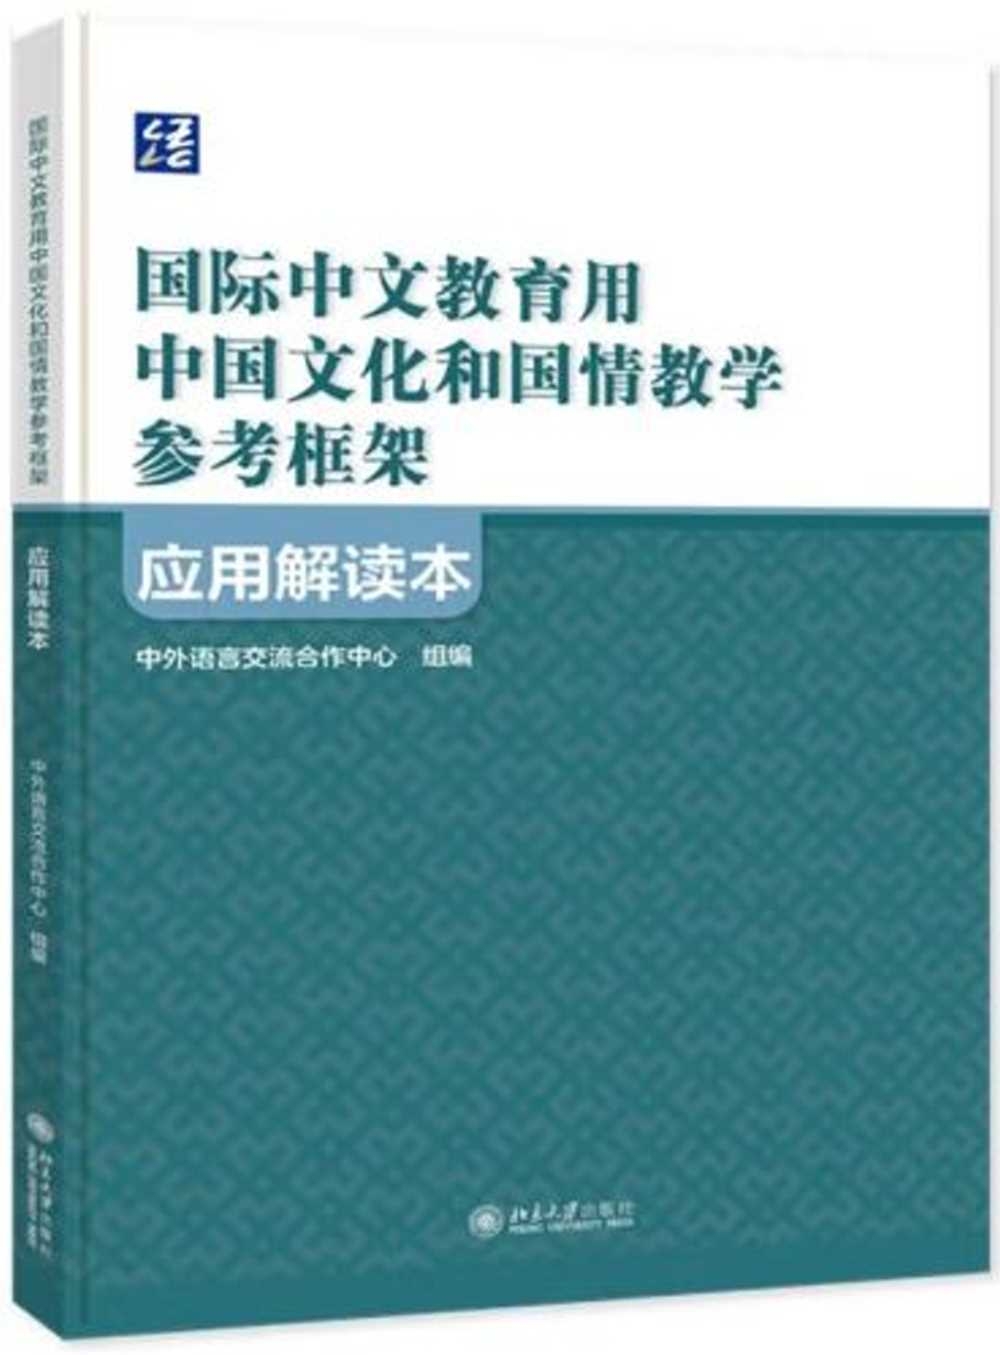 《國際中文教育用中國文化和國情教學參考框架》應用解讀本